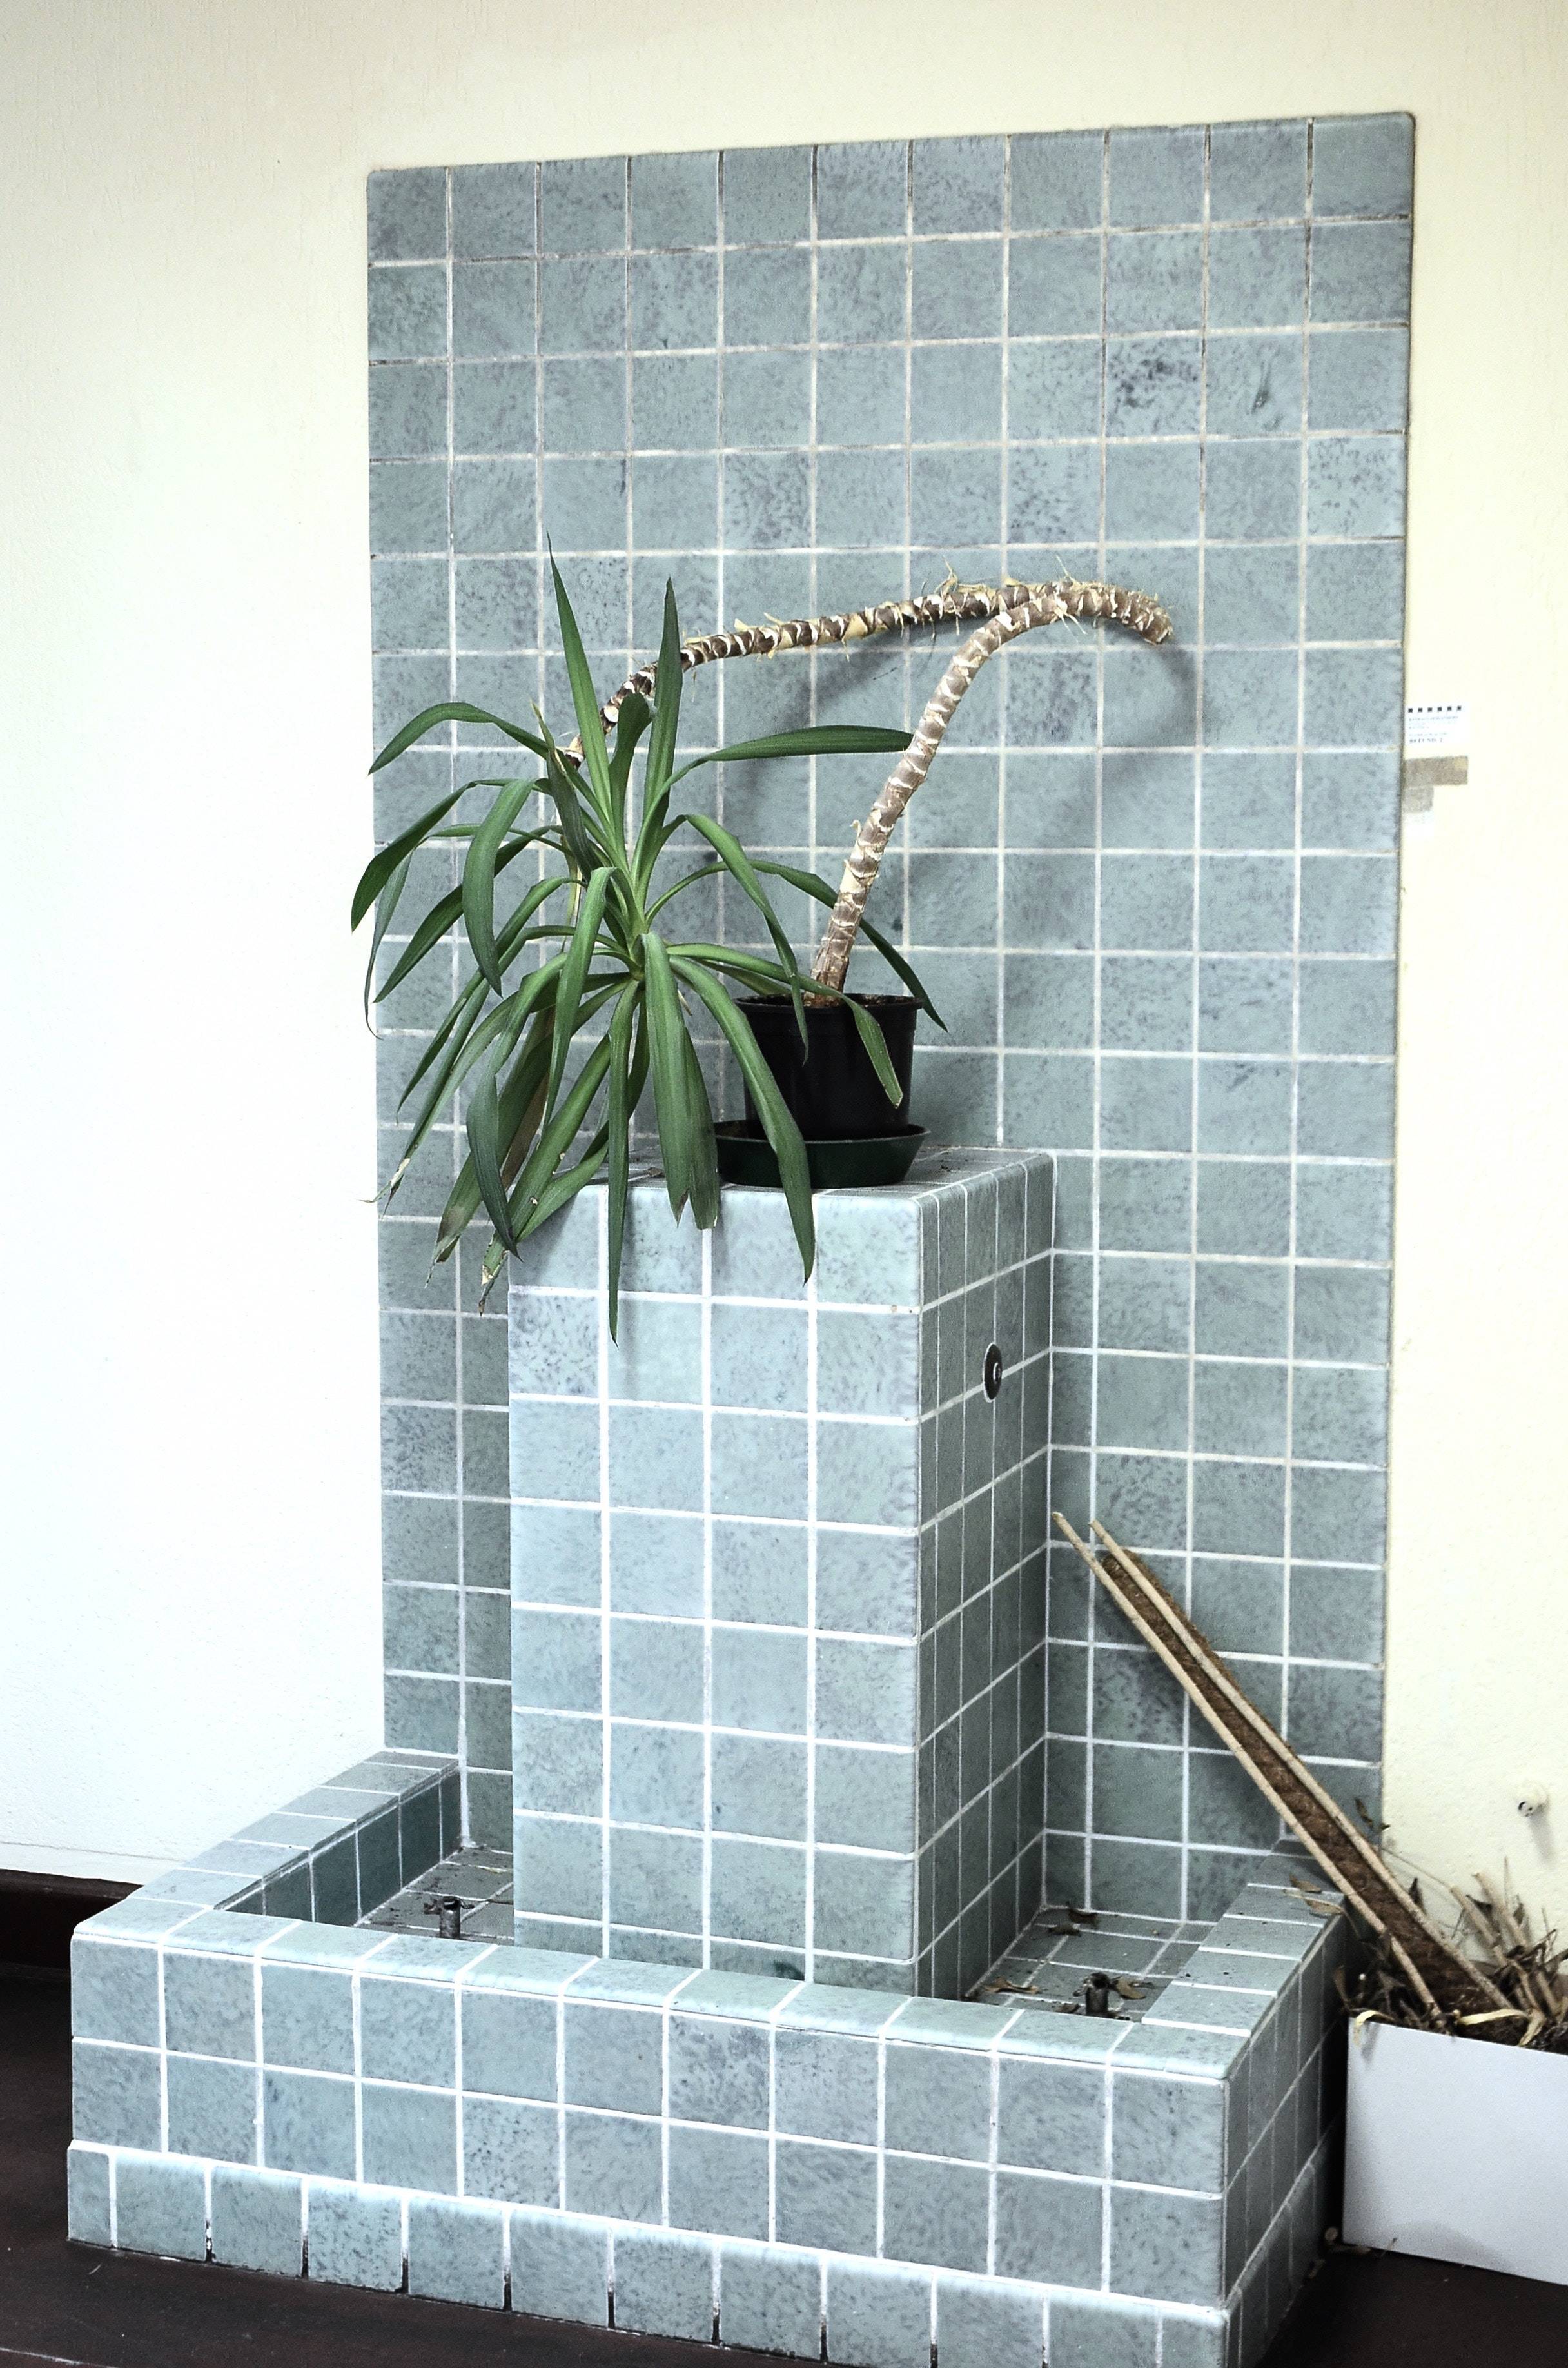 Quelle est la meilleure plante pour une salle de bains ?